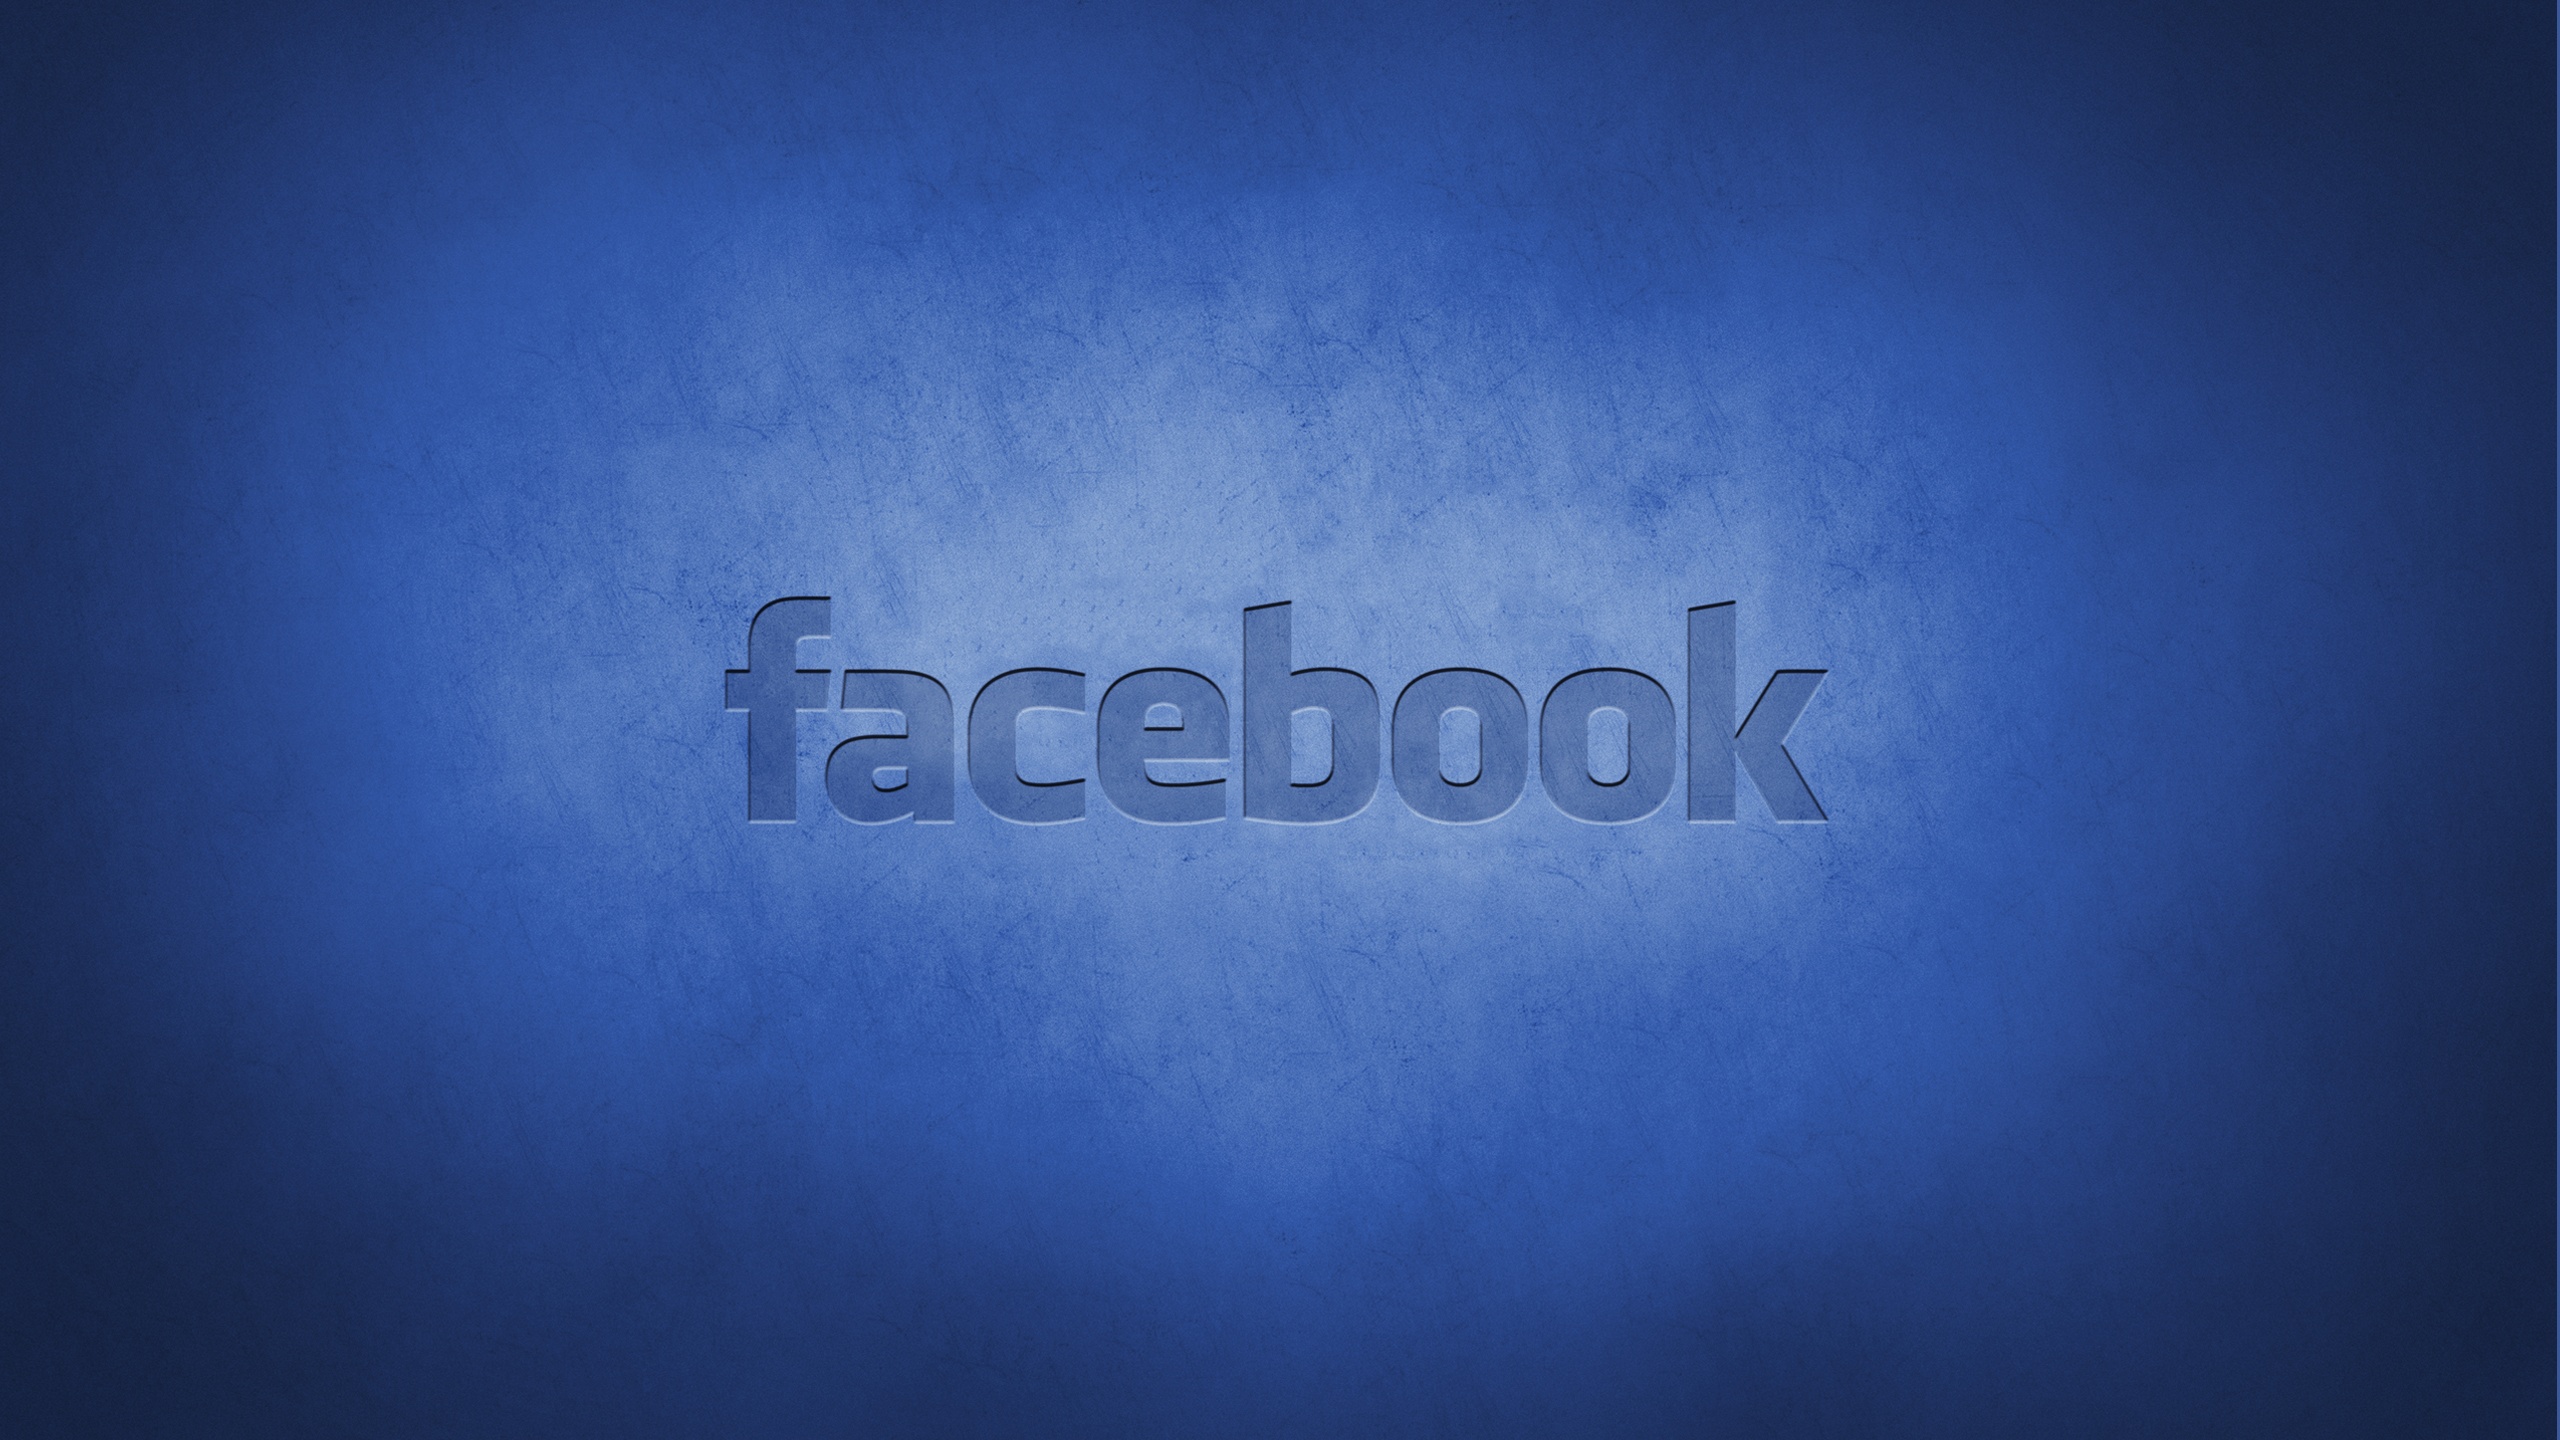 facebook wallpaper herunterladen,blau,text,himmel,schriftart,elektrisches blau